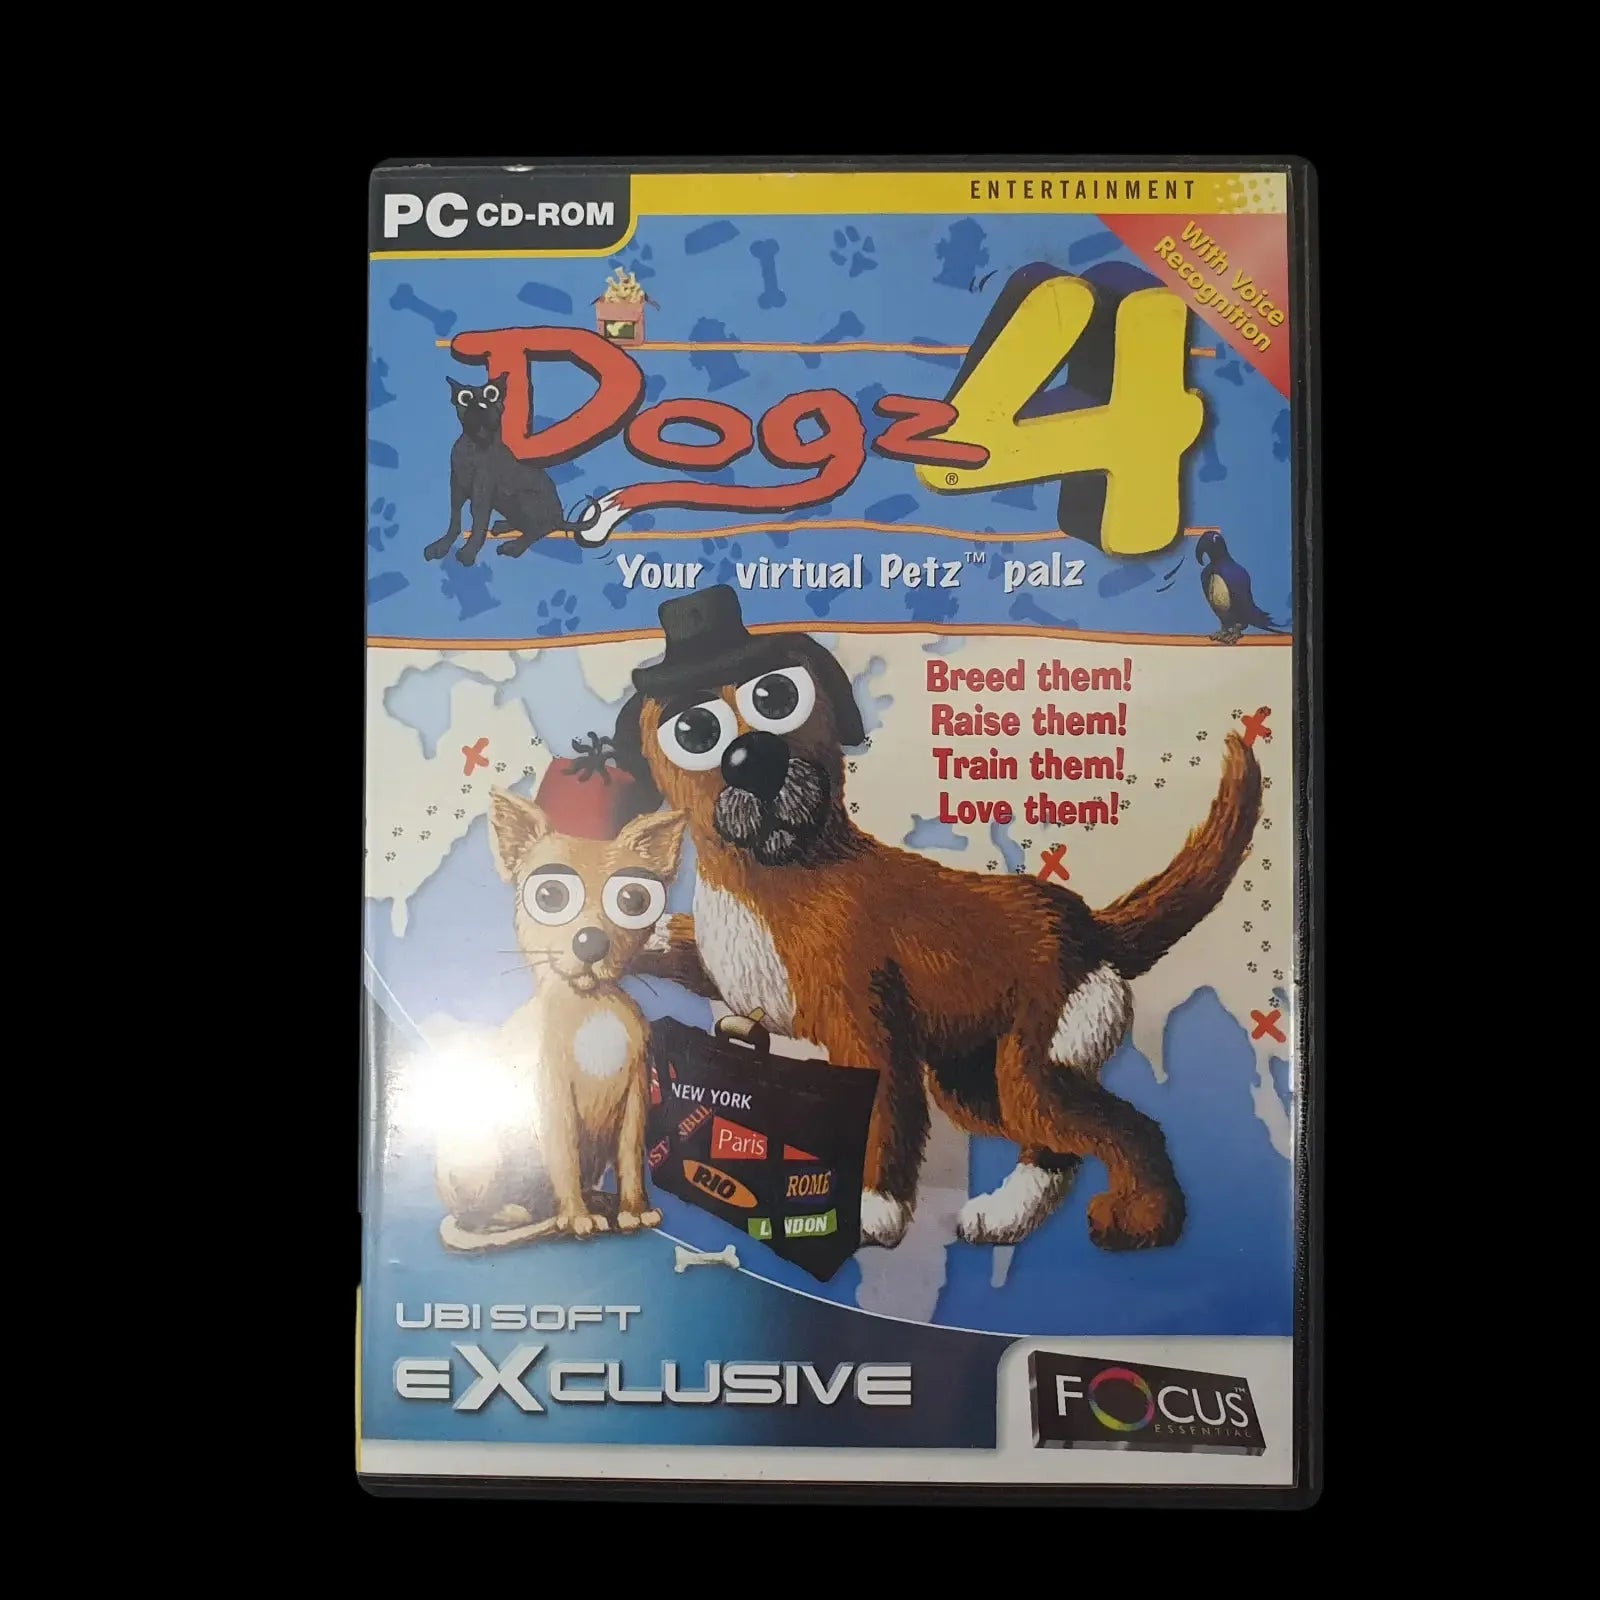 Dogz 4 Pc Ubisoft 2001 Video Game Vintage - Games - 1 - 2475